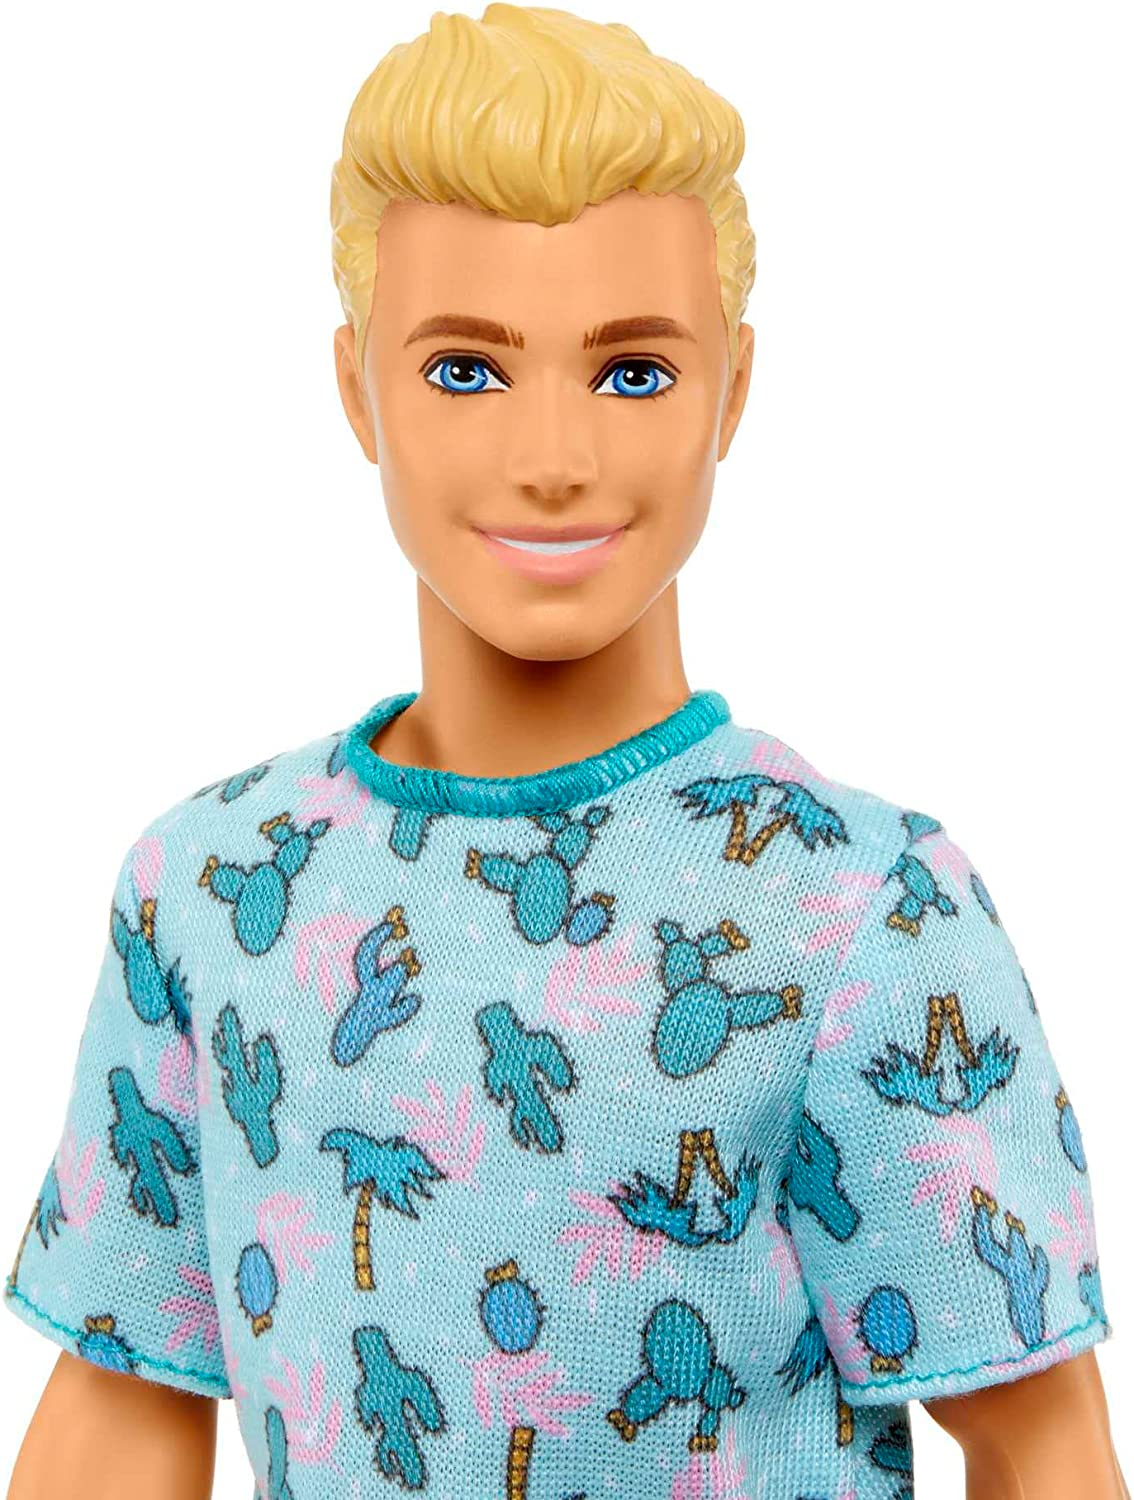 Barbie Boneco Ken Fashionistas nº 211 com cabelo loiro, vestindo camiseta Cactus e shorts branco com tênis, HJT10